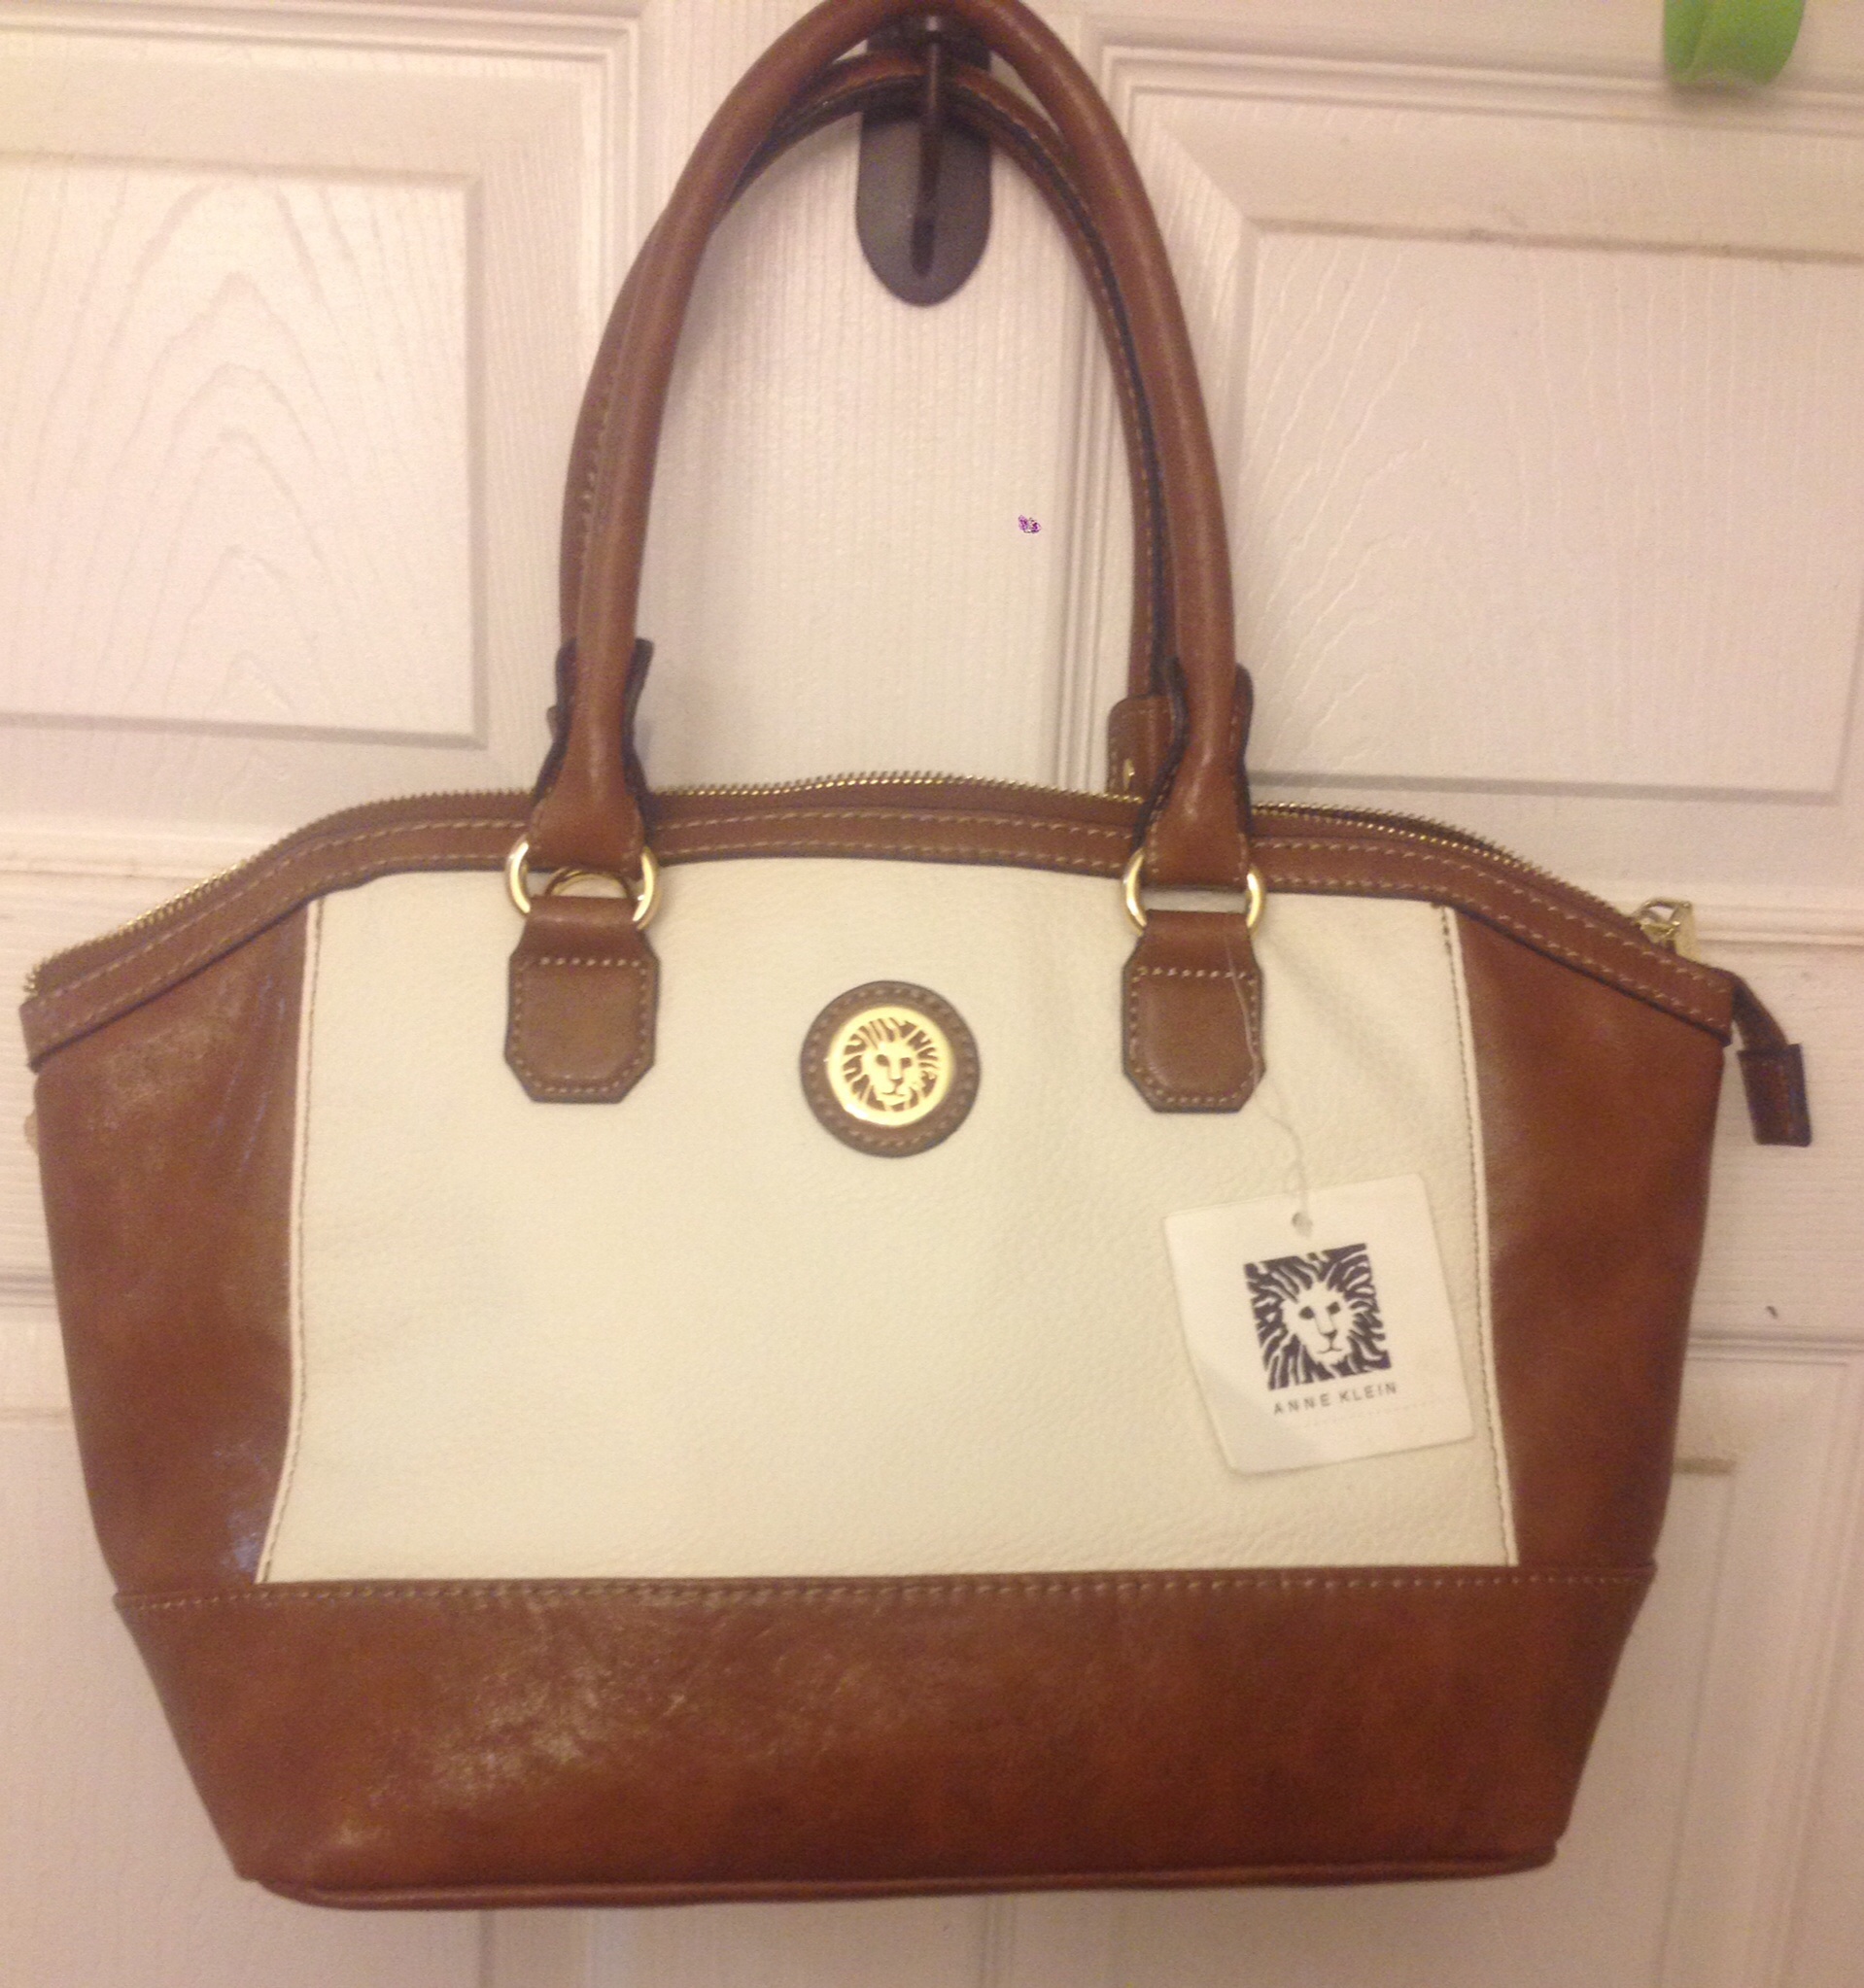 Anne Klein bucket purse, brown And white in c